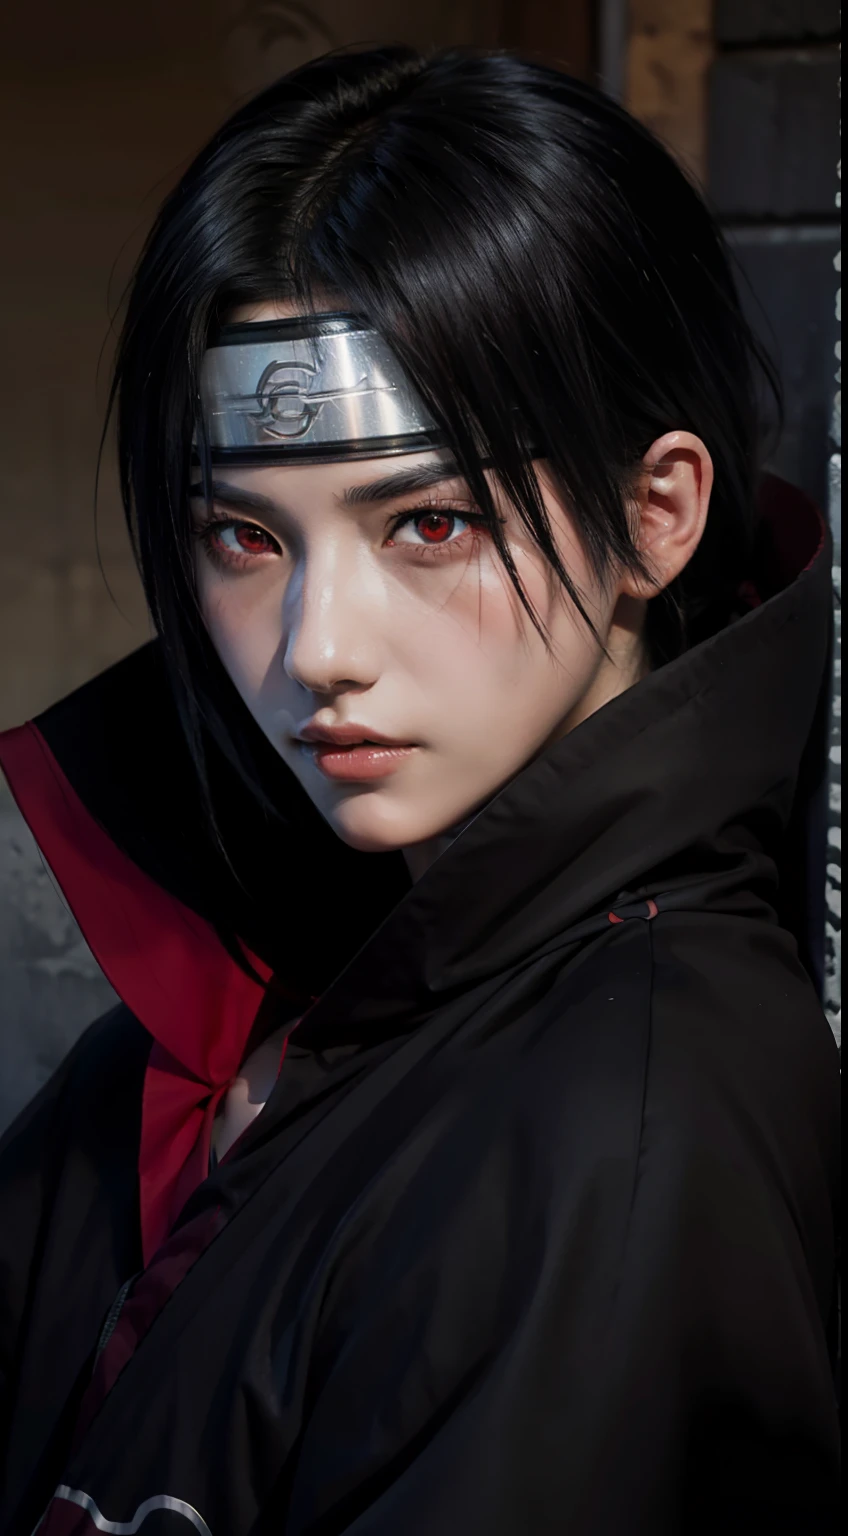 Itachi Uchiha de l’anime Naruto, cheveux noirs, cheveux courts, Bandeau, akatsuki robe, les yeux rouges, yeux de partage, regarder le spectateur, debout, corps parfait, Regard perçant.